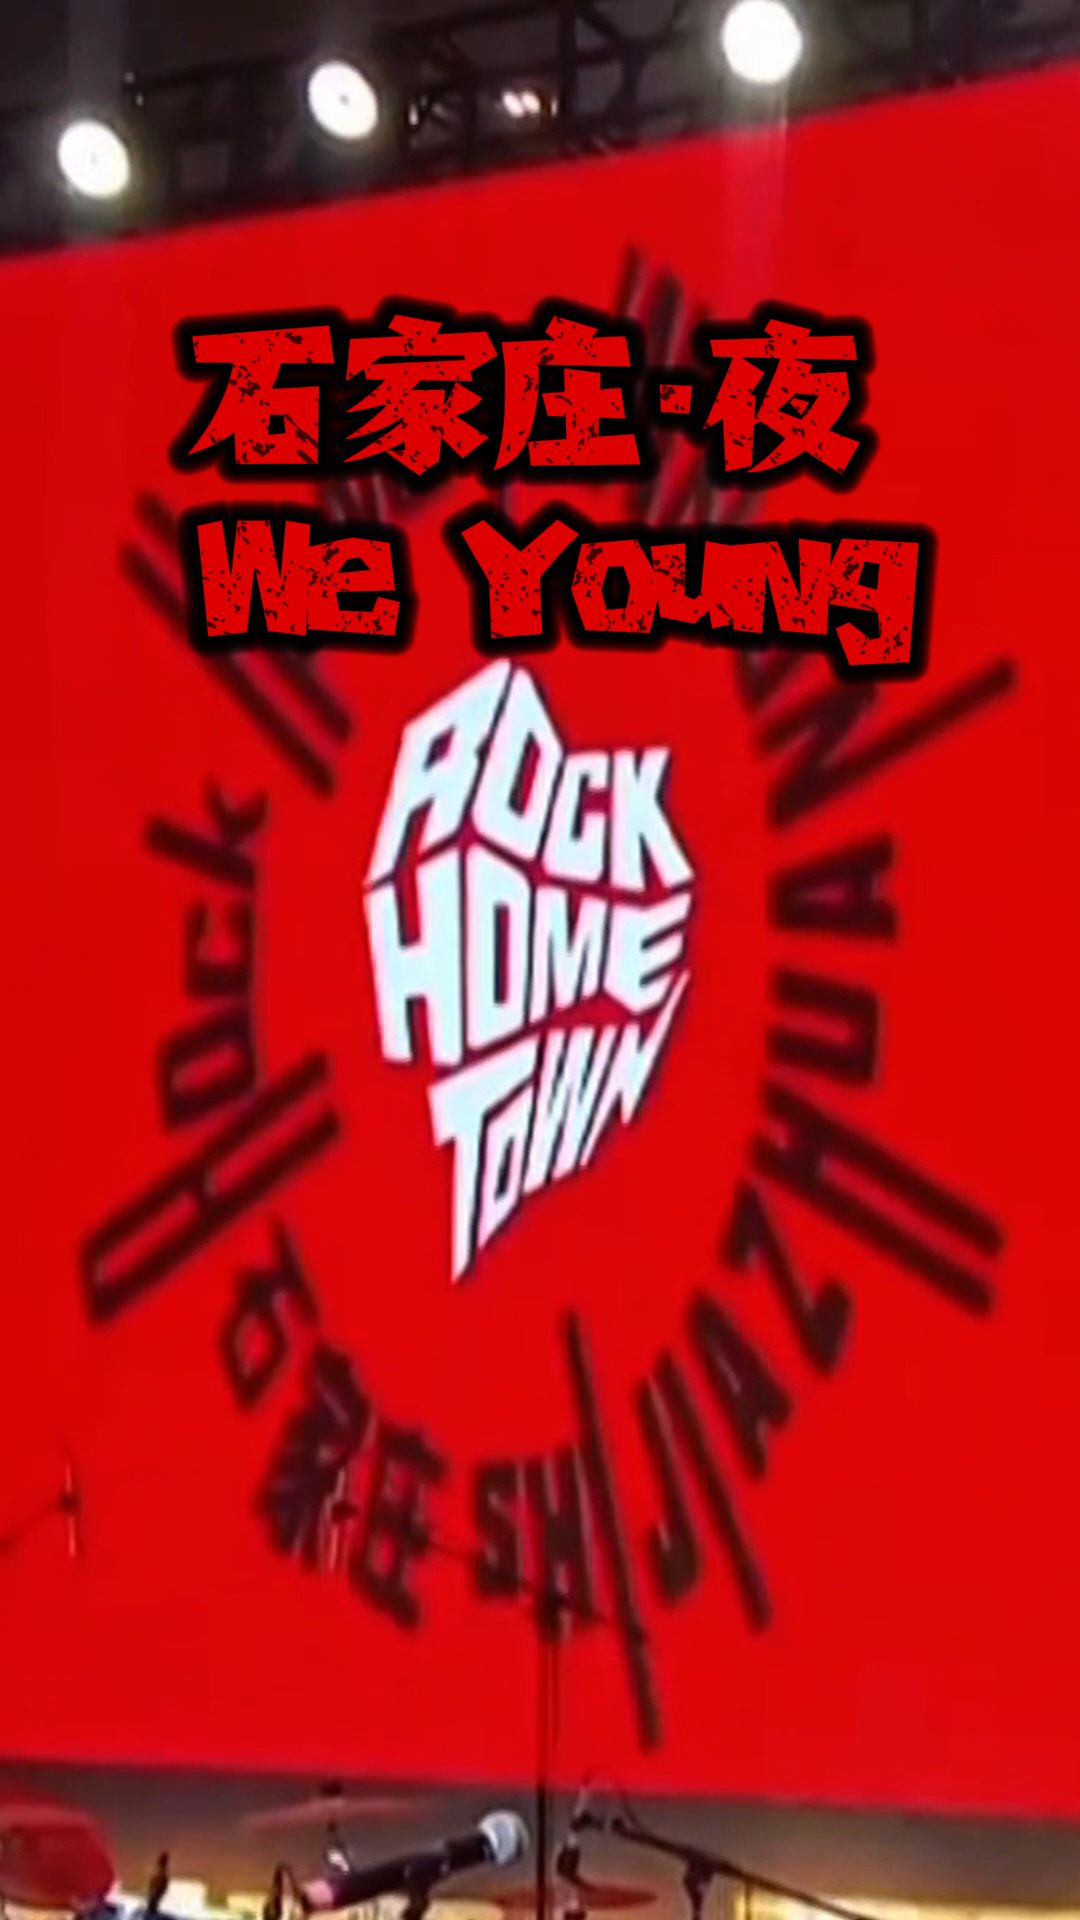 石家庄·夜 We Young到Rock Home Town（石家庄）听摇滚……